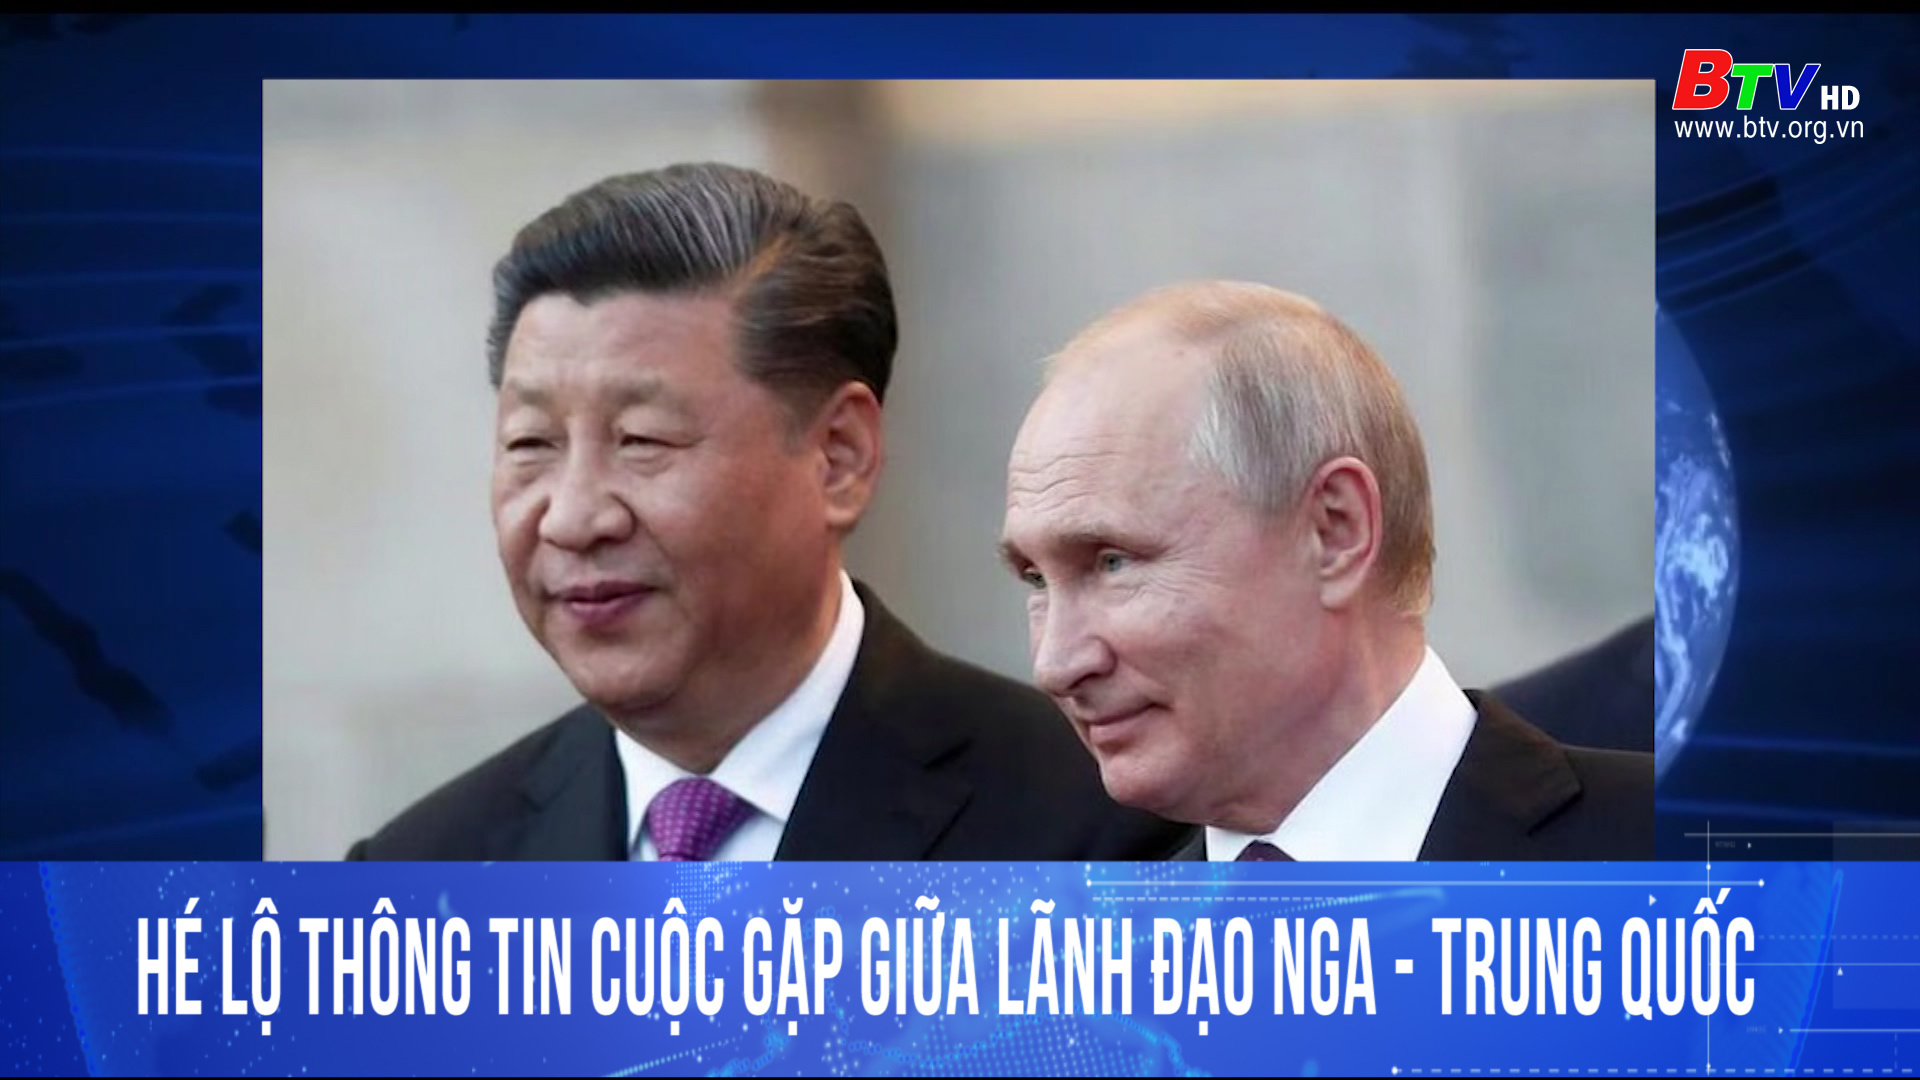 Hé lộ thông tin cuộc gặp giữa lãnh đạo Nga- Trung Quốc